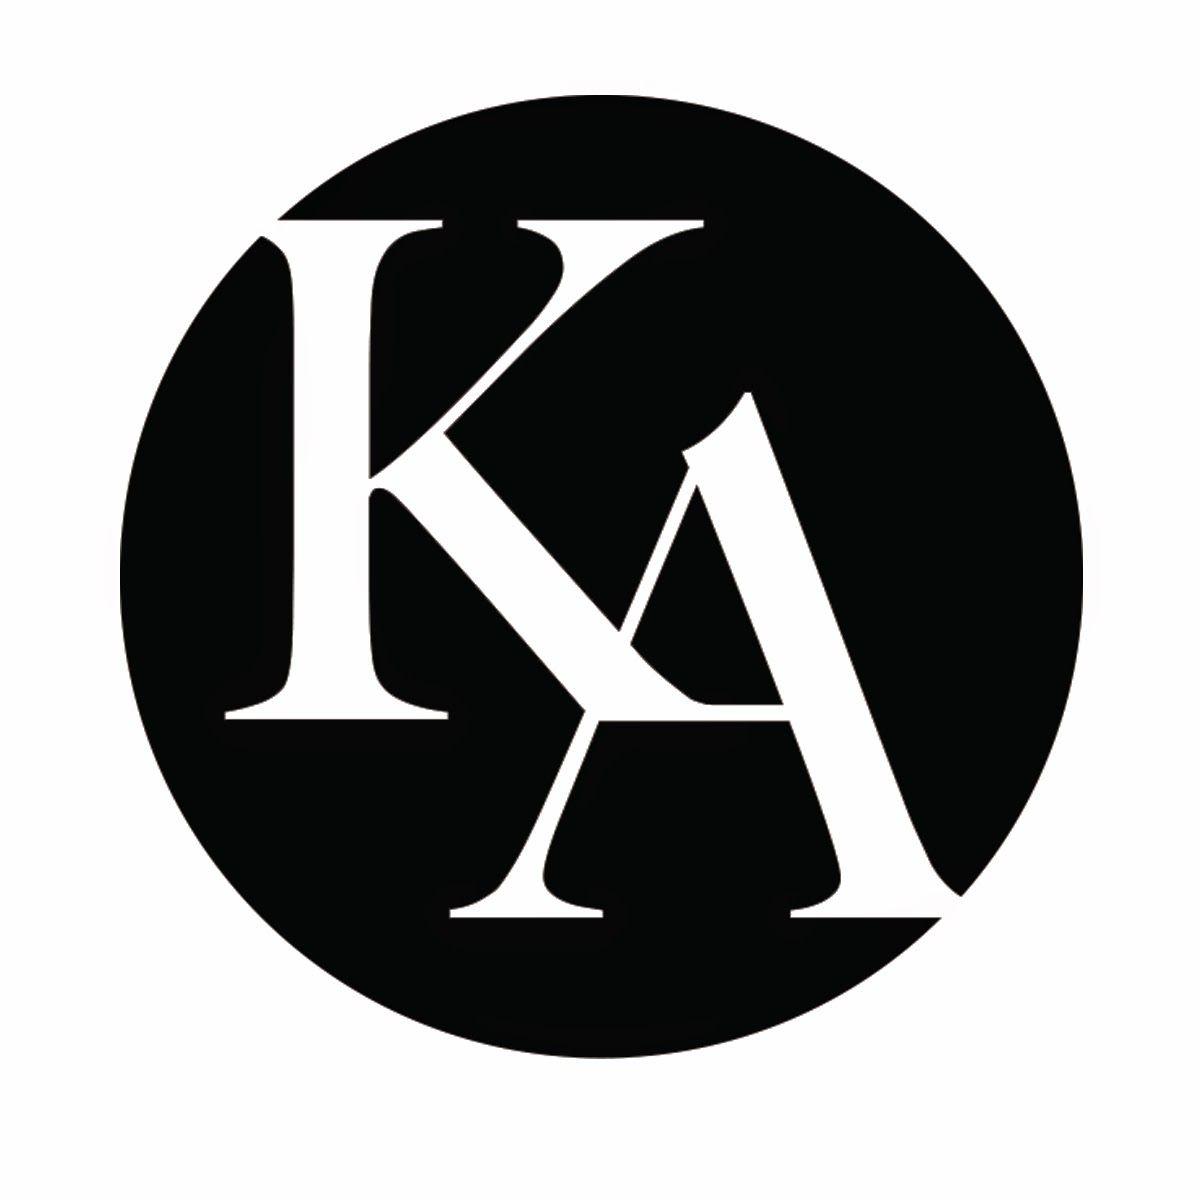 Ka Logo - Ka Logos